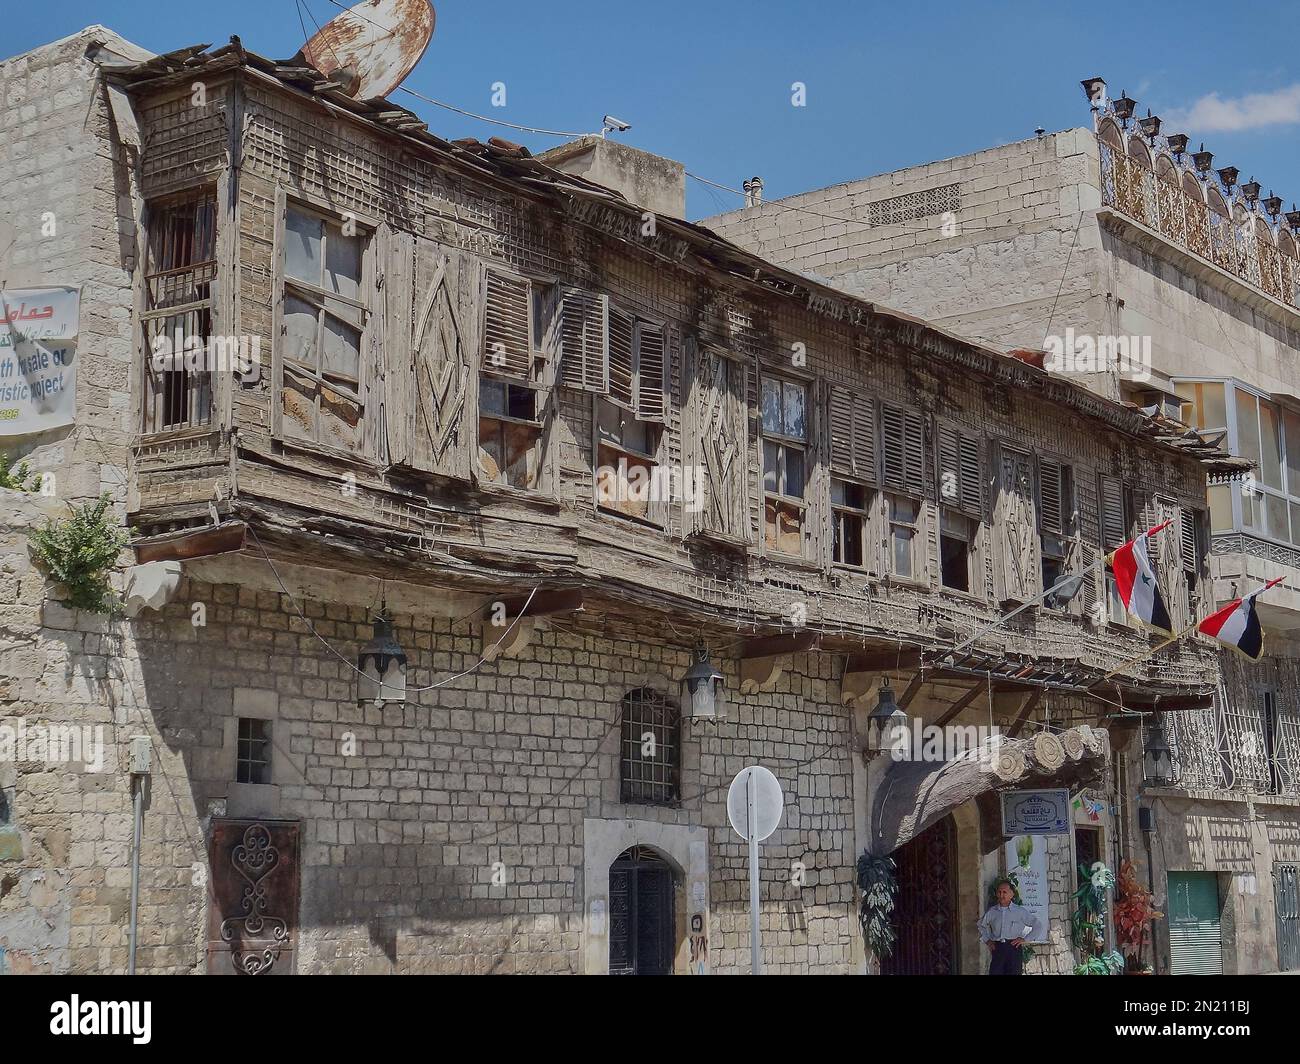 Aleppo, Syrien - 2011 04 13: Alte Gebäude in den Straßen von Aleppo in Syrien zu Zeiten des arabischen Frühlings kurz vor dem Krieg im Nahen Osten Stockfoto